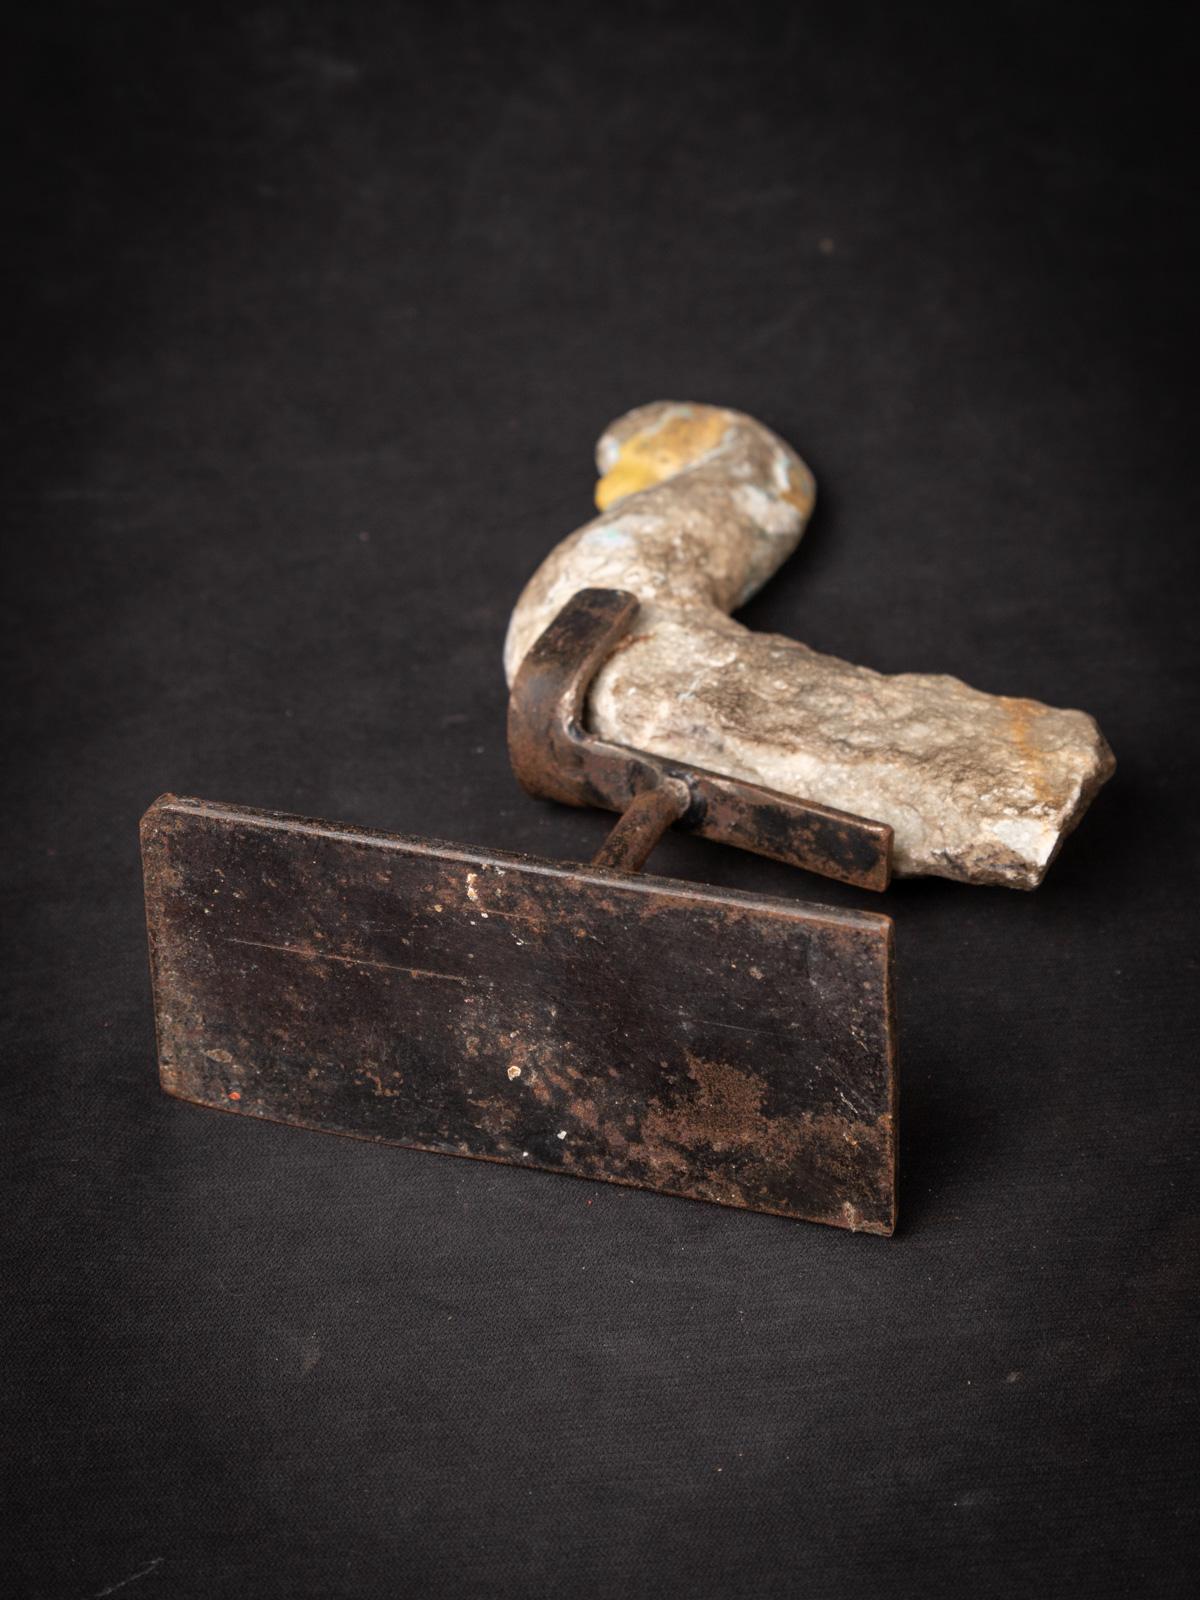 Antikes Fragment eines Steintempels
MATERIAL: Naturstein
22,3 cm hoch
6 cm breit und 14 cm tief
17. Jahrhundert - möglicherweise früher
Gewicht: 777 Gramm
Mit Ursprung in Indien